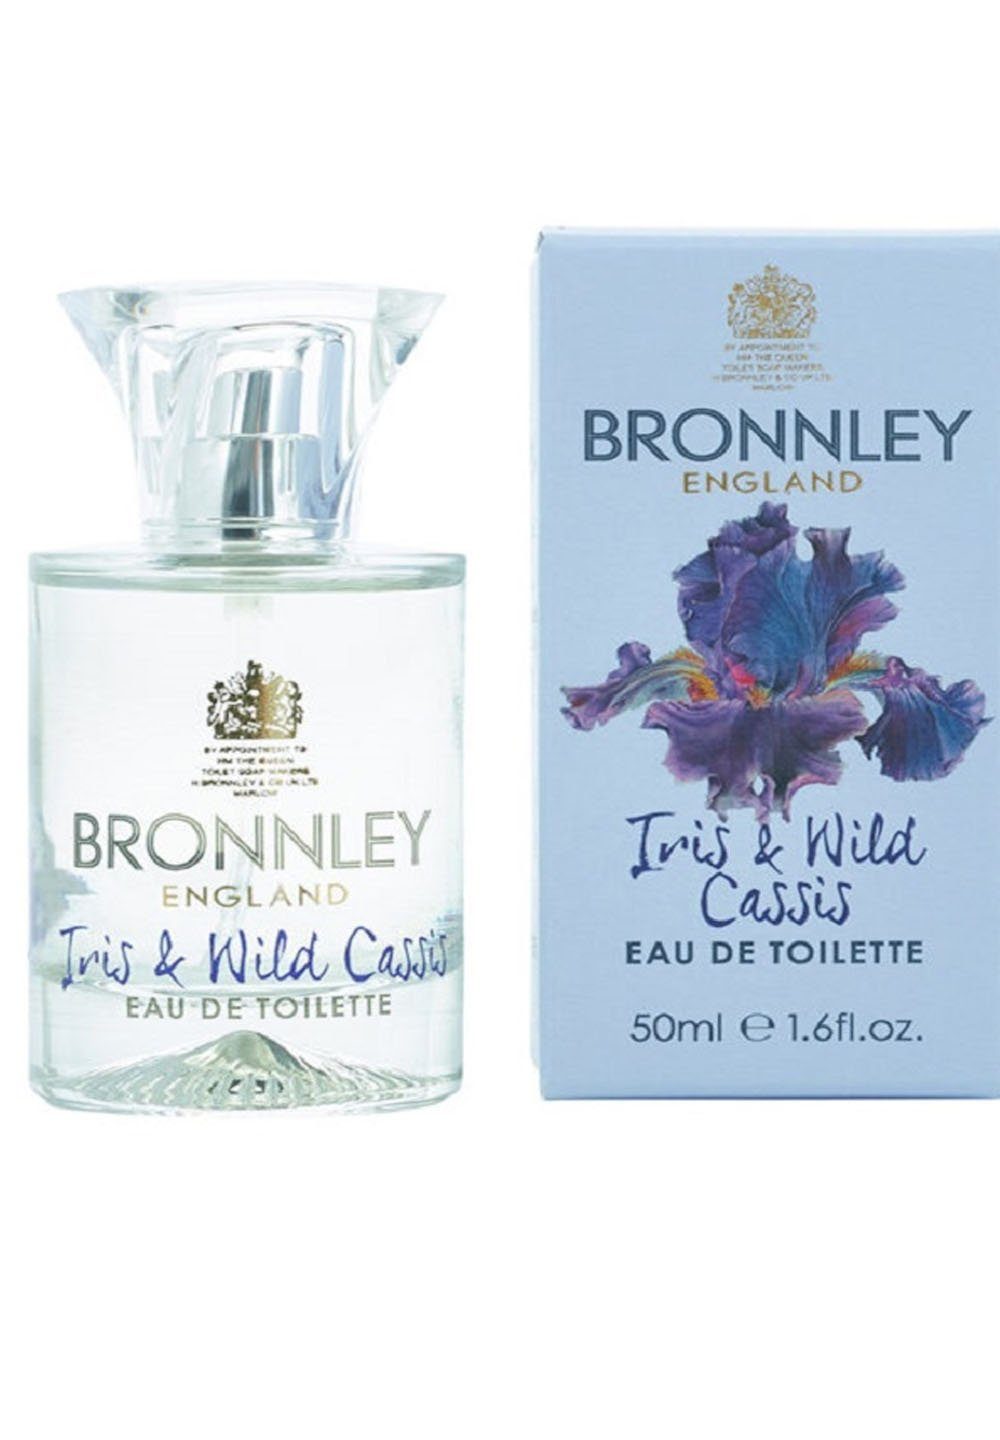 Bronnley Eau de Toilette Iris & Wild Cassis, Eau de Toilette 50ml